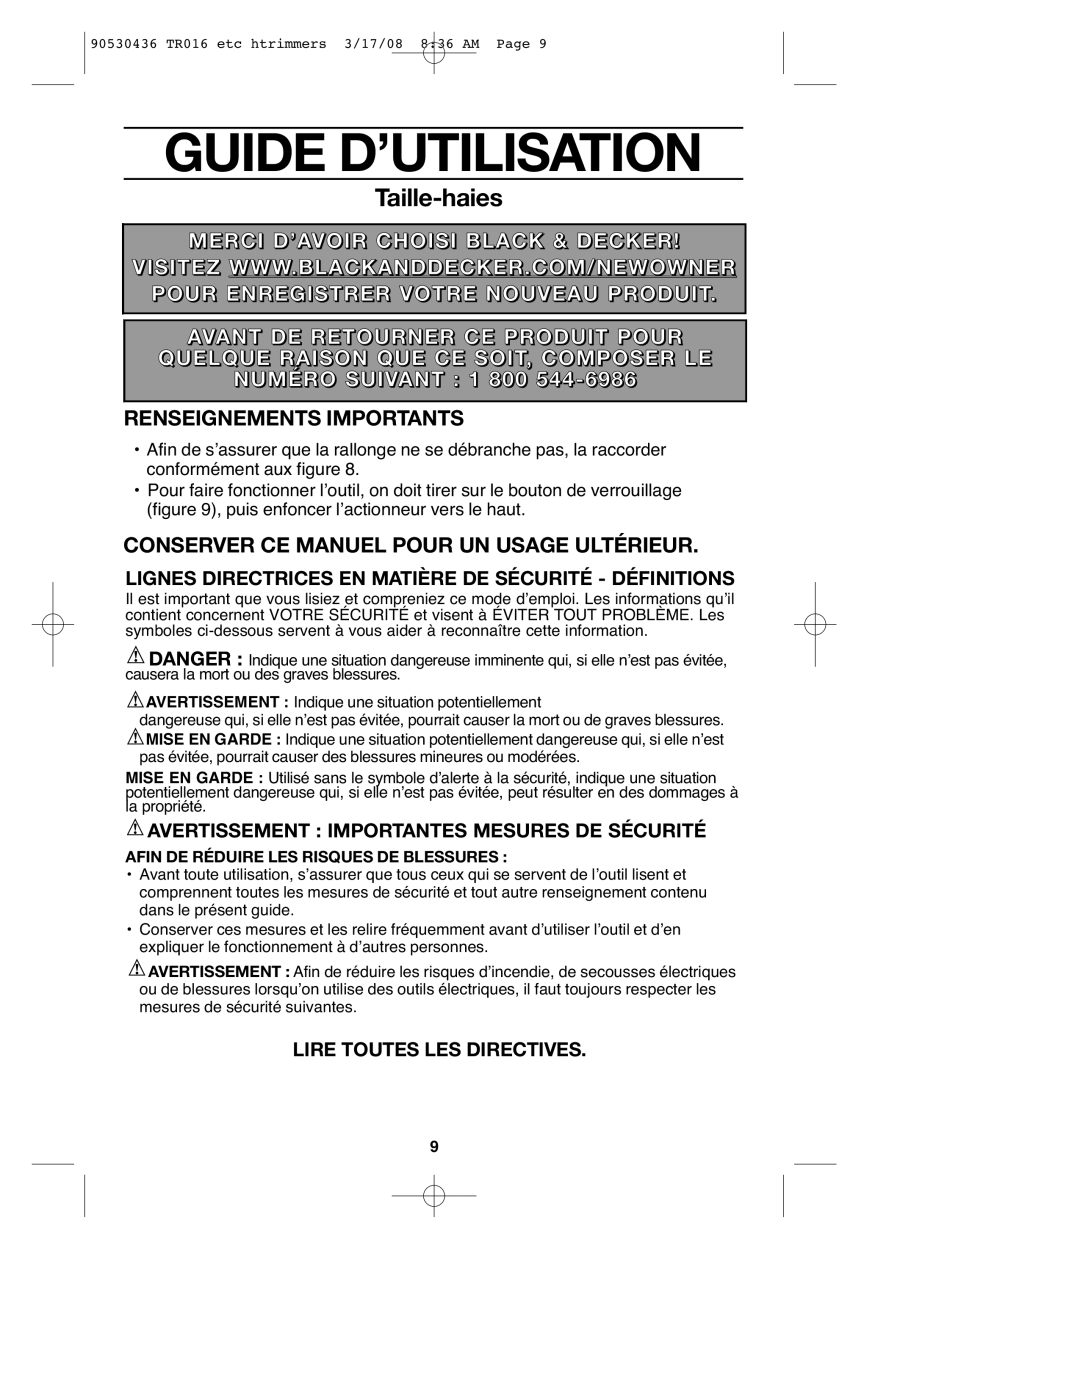 Black & Decker HT012 Guide D’Utilisation, Taille-haies, Merci D’Avoir Choisi Black & Decker, Renseignements Importants 